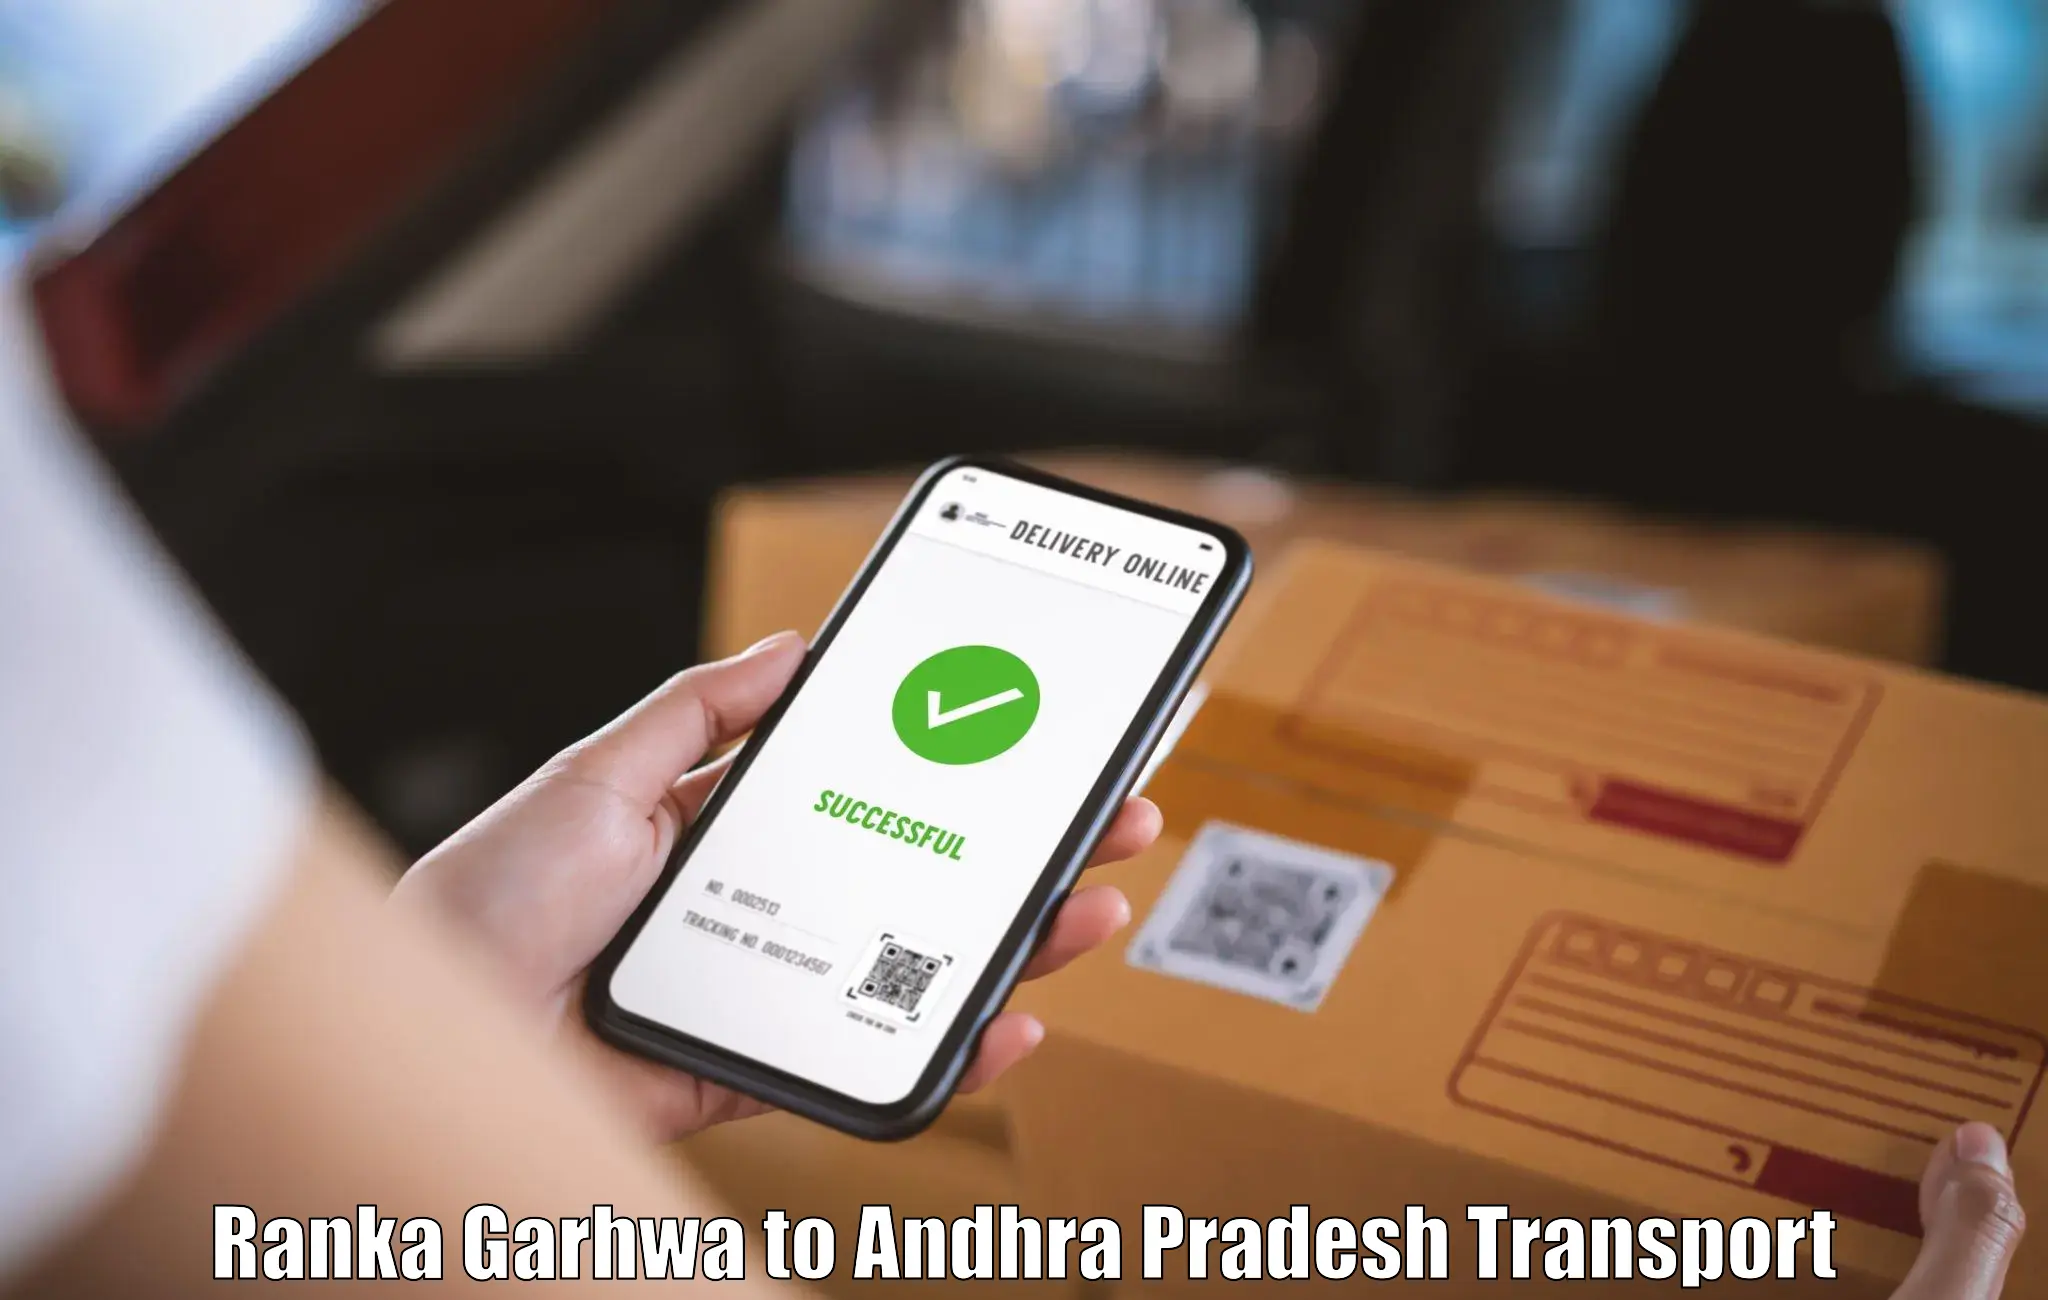 Part load transport service in India Ranka Garhwa to Ponnur